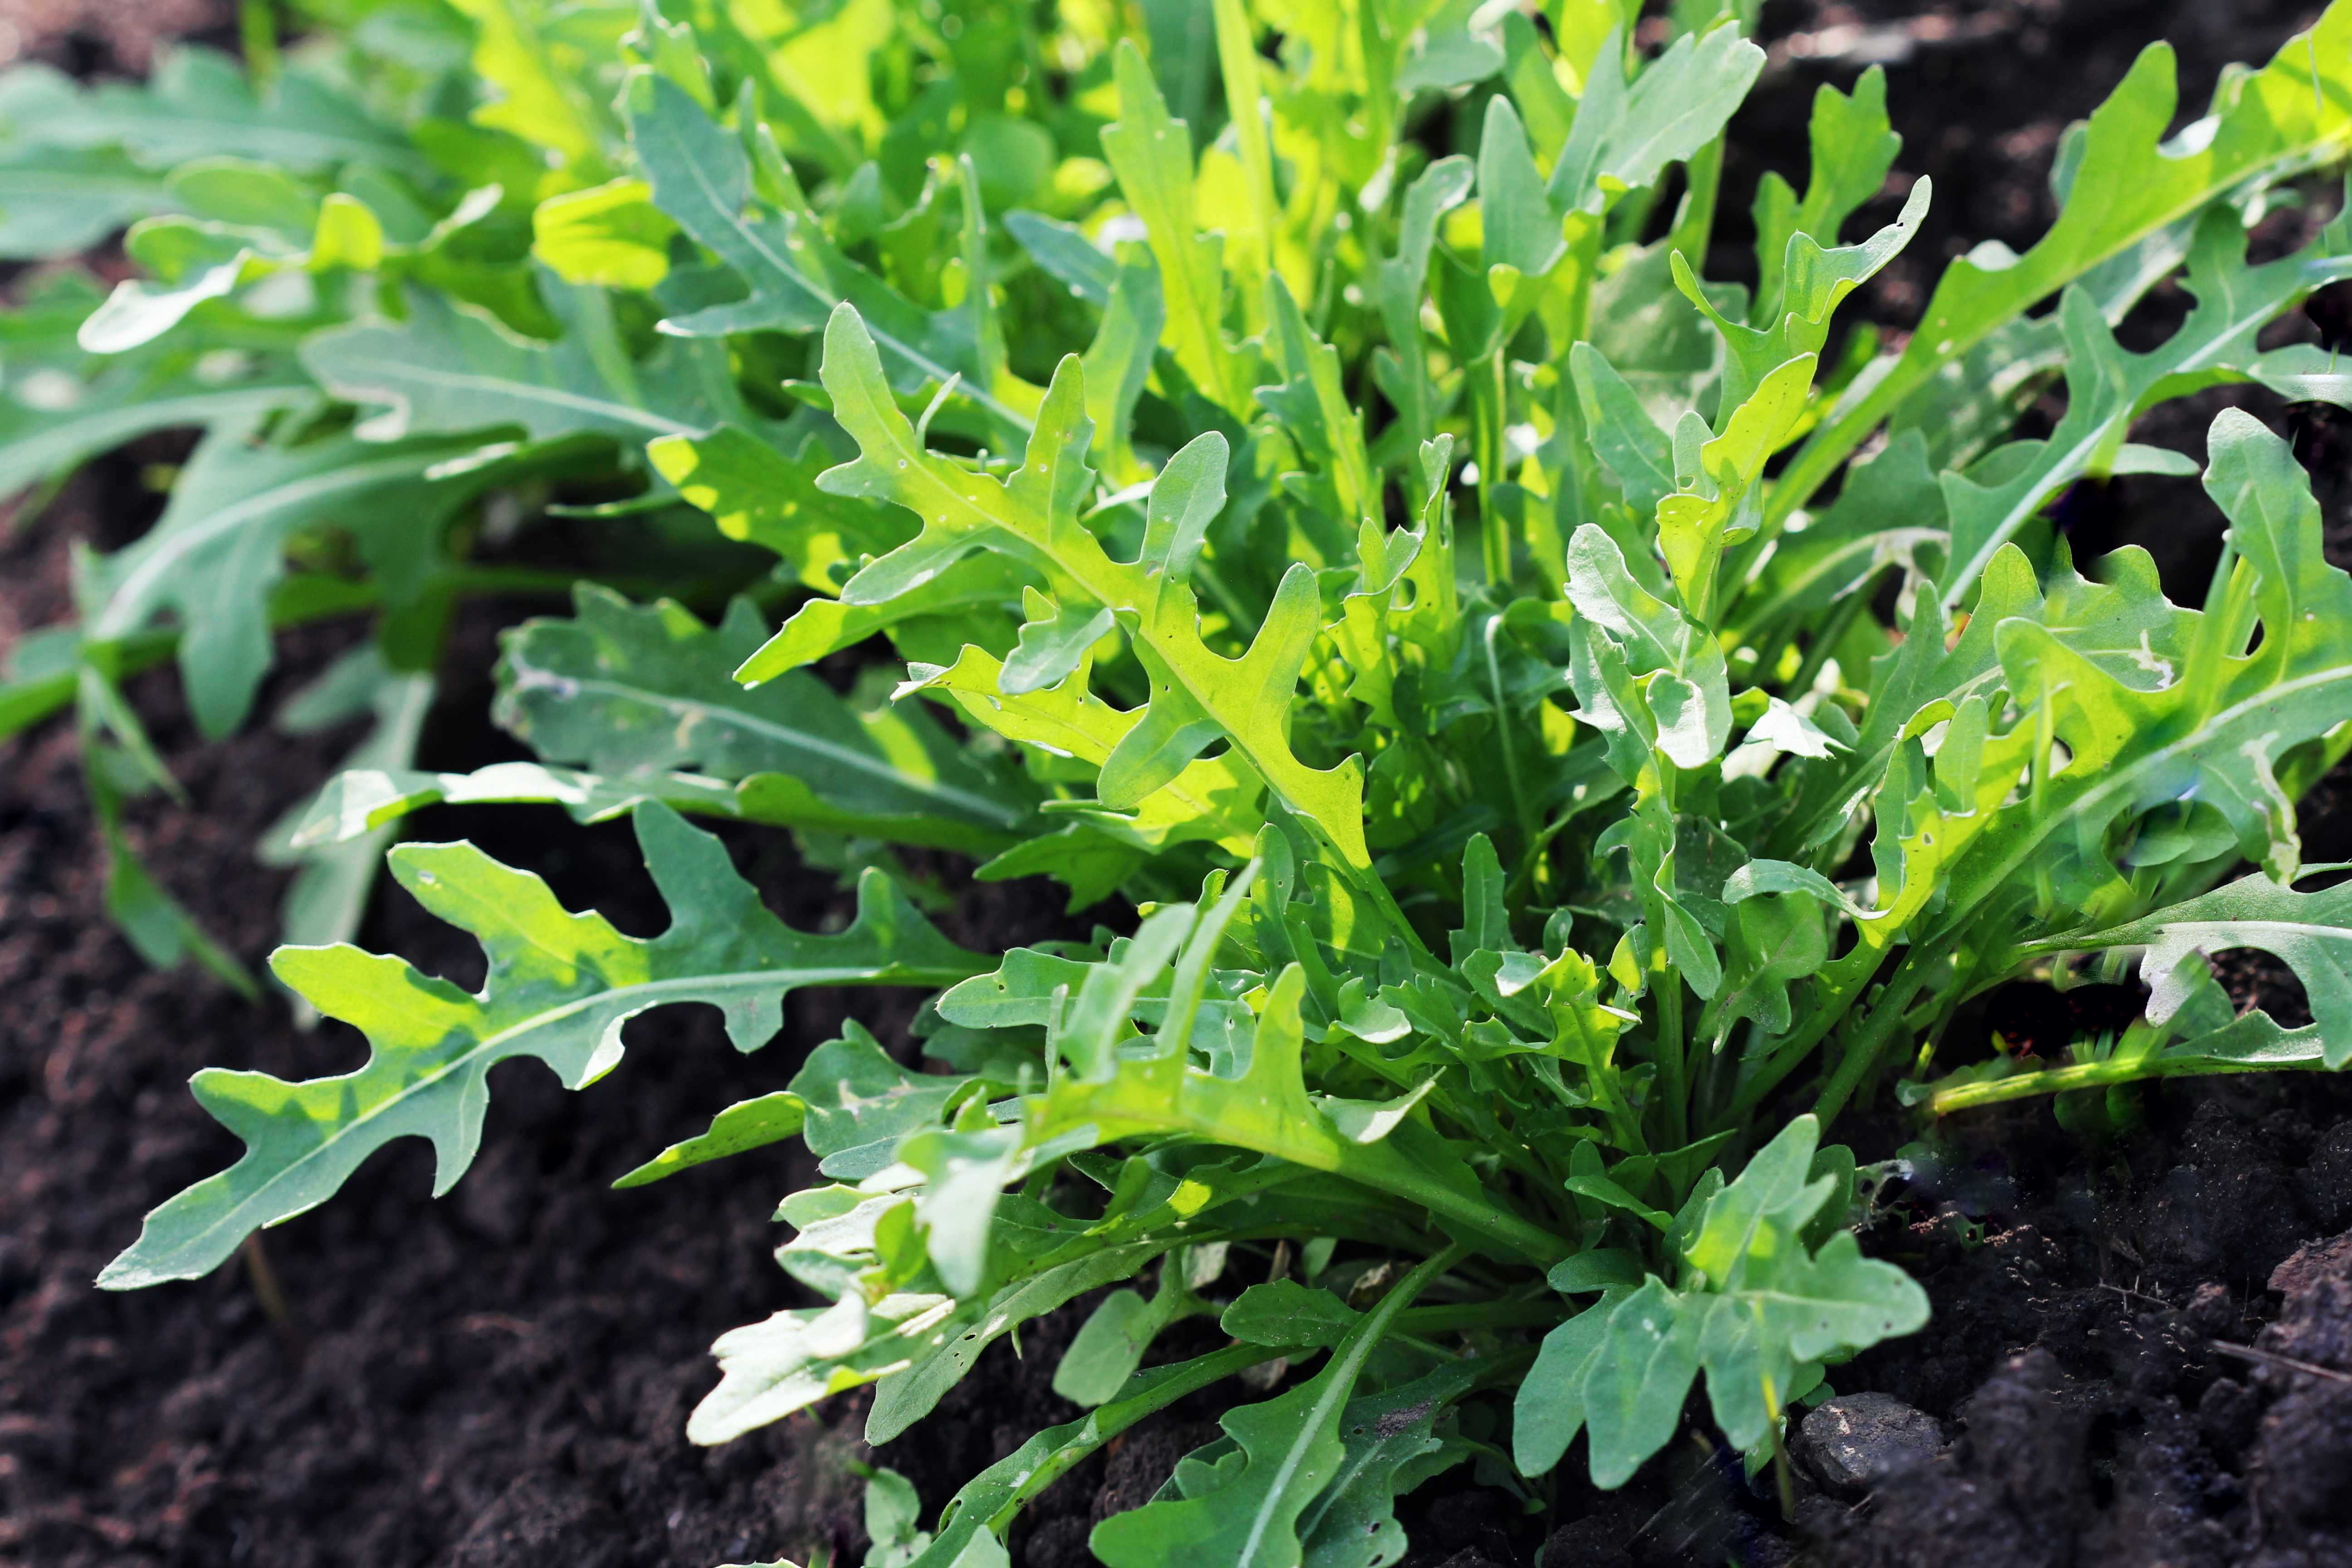 La roquette est une plante herbacée annuelle excellente en salade ou en aromate, appréciée par les chefs de cuisine pour son goût piquant et poivré. Copyright (c) 2017 vaivirga/Shutterstock.